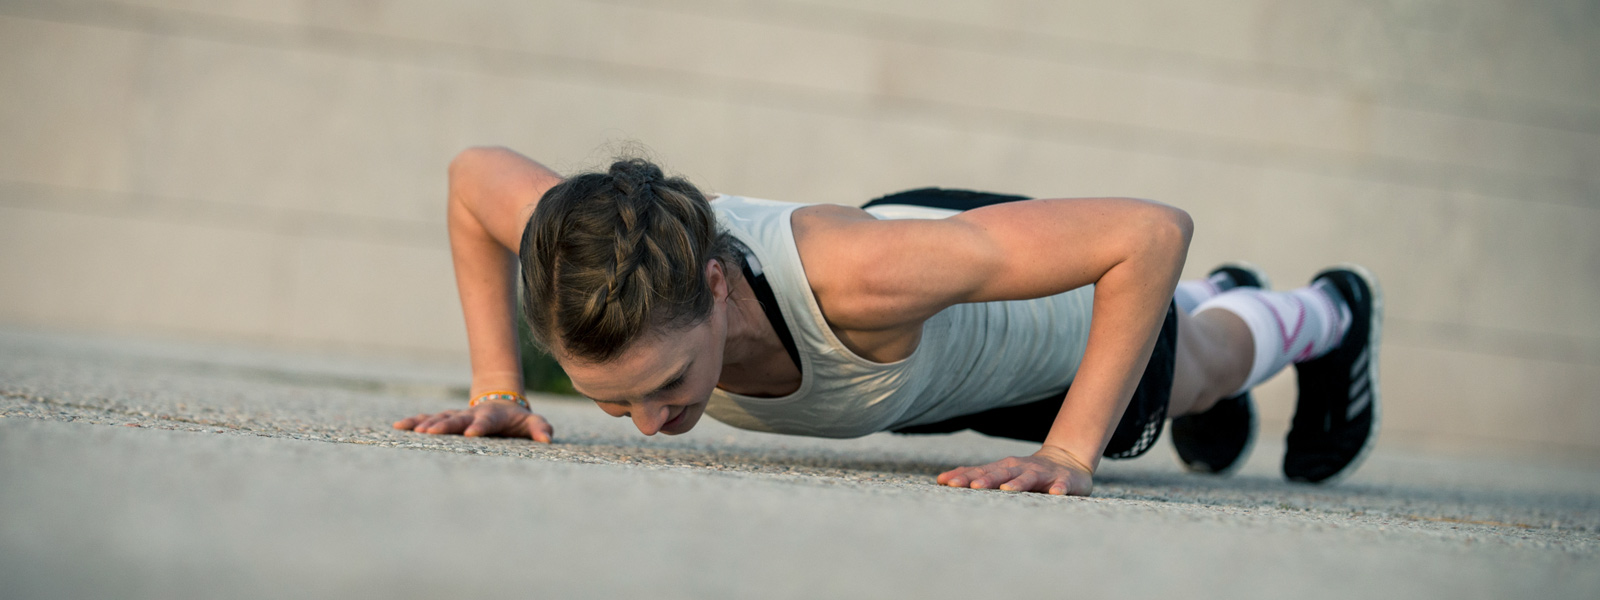 Vrouw zet push-ups op een betonnen vloeraanzicht van diagonaal